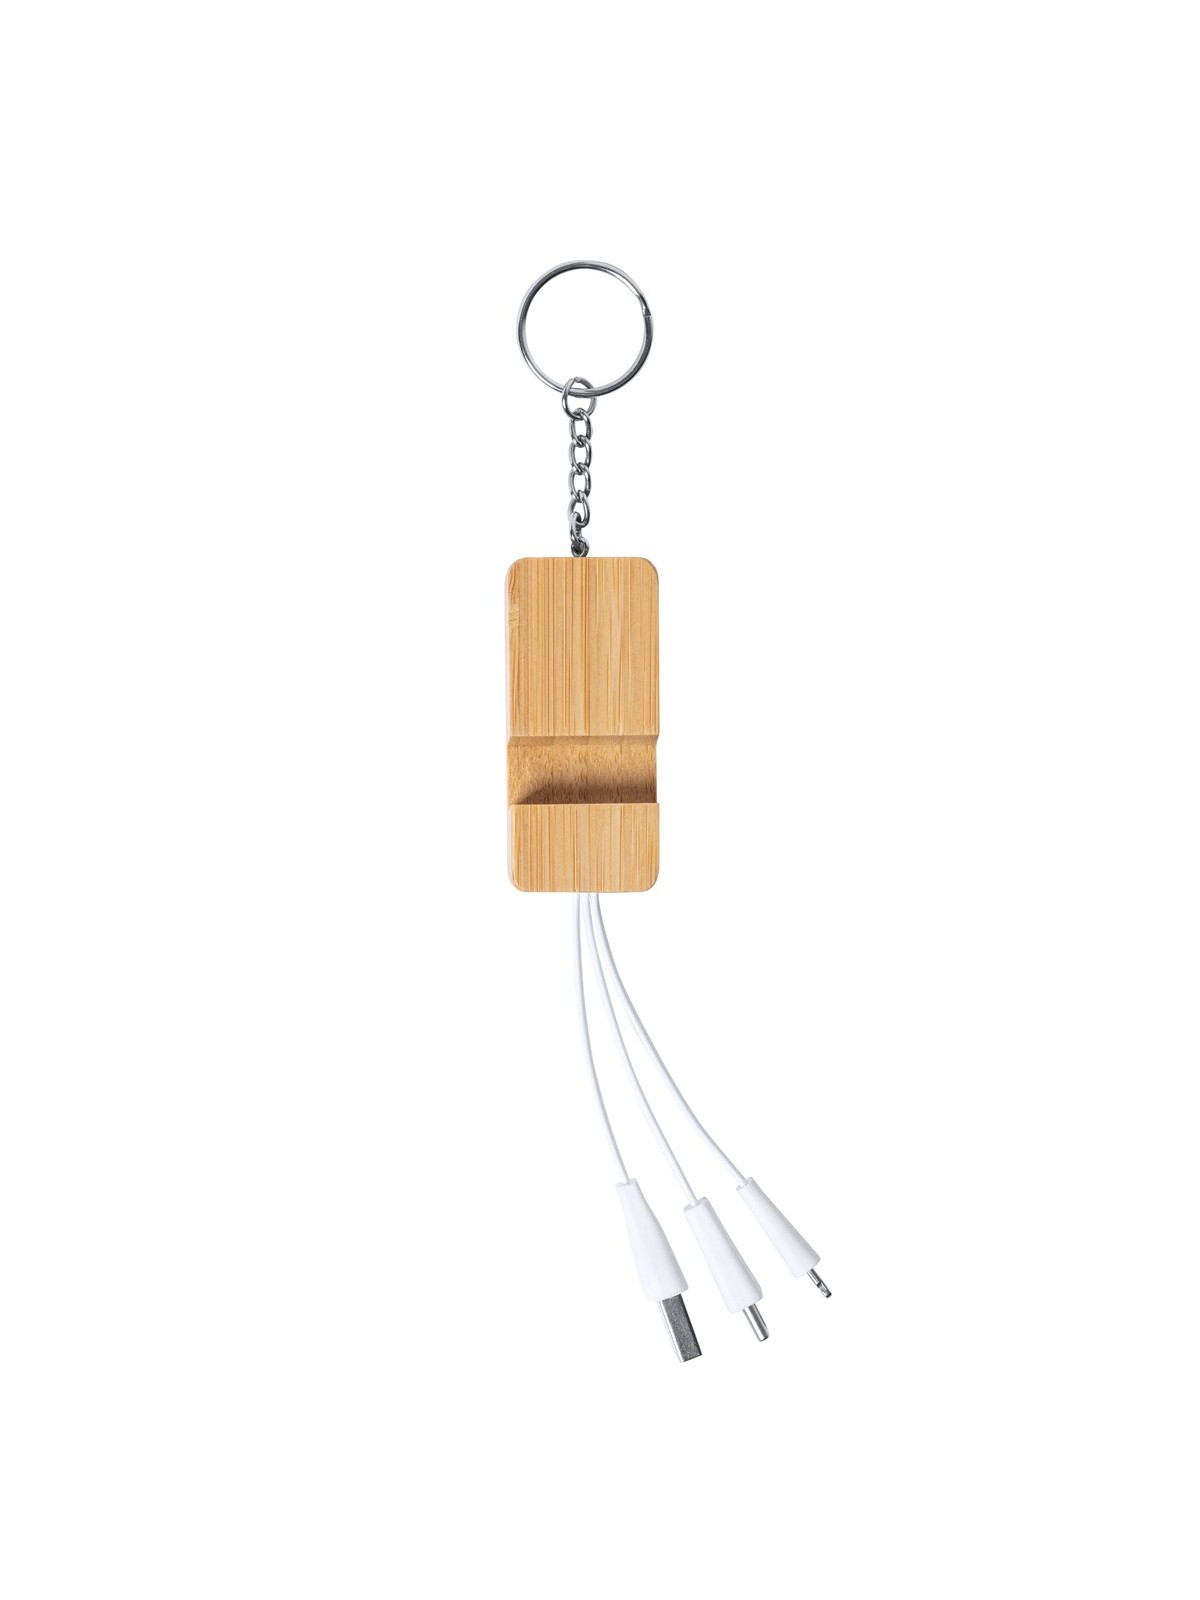 10-195 Câble chargeur USB en bambou personnalisé